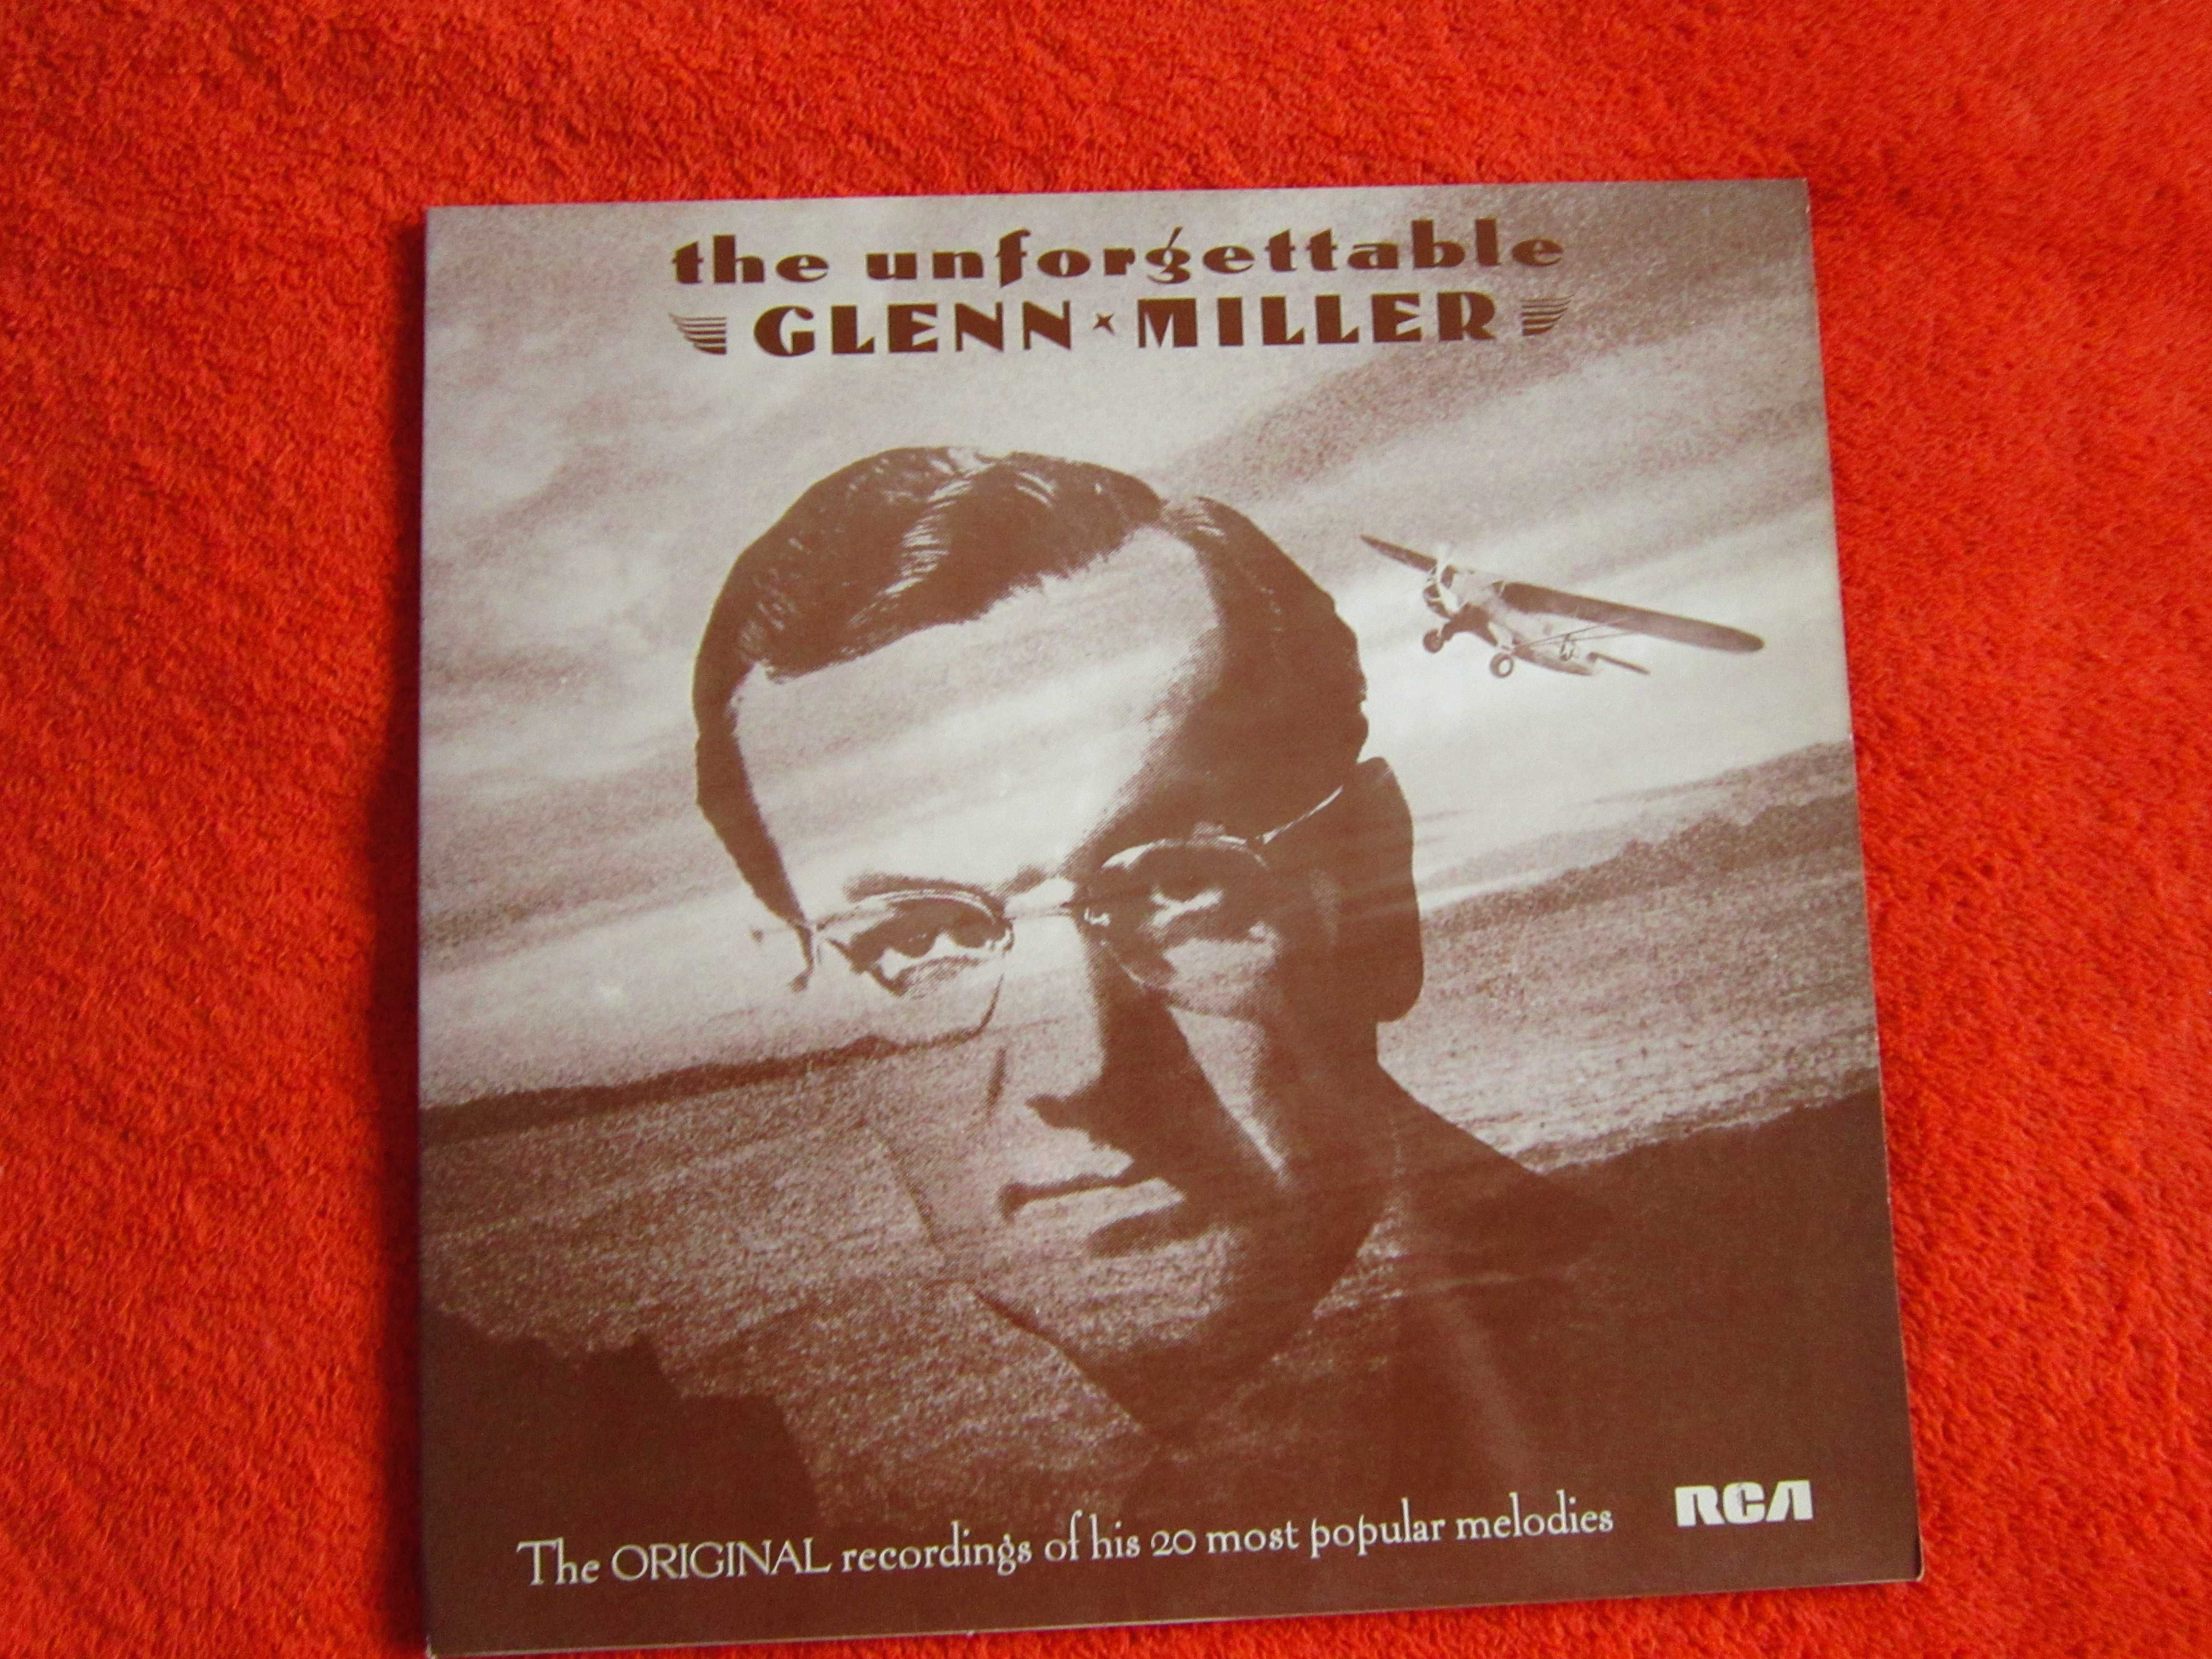 vinil rar jazz Glenn Miller Unforgettable made in UK remastered 1977